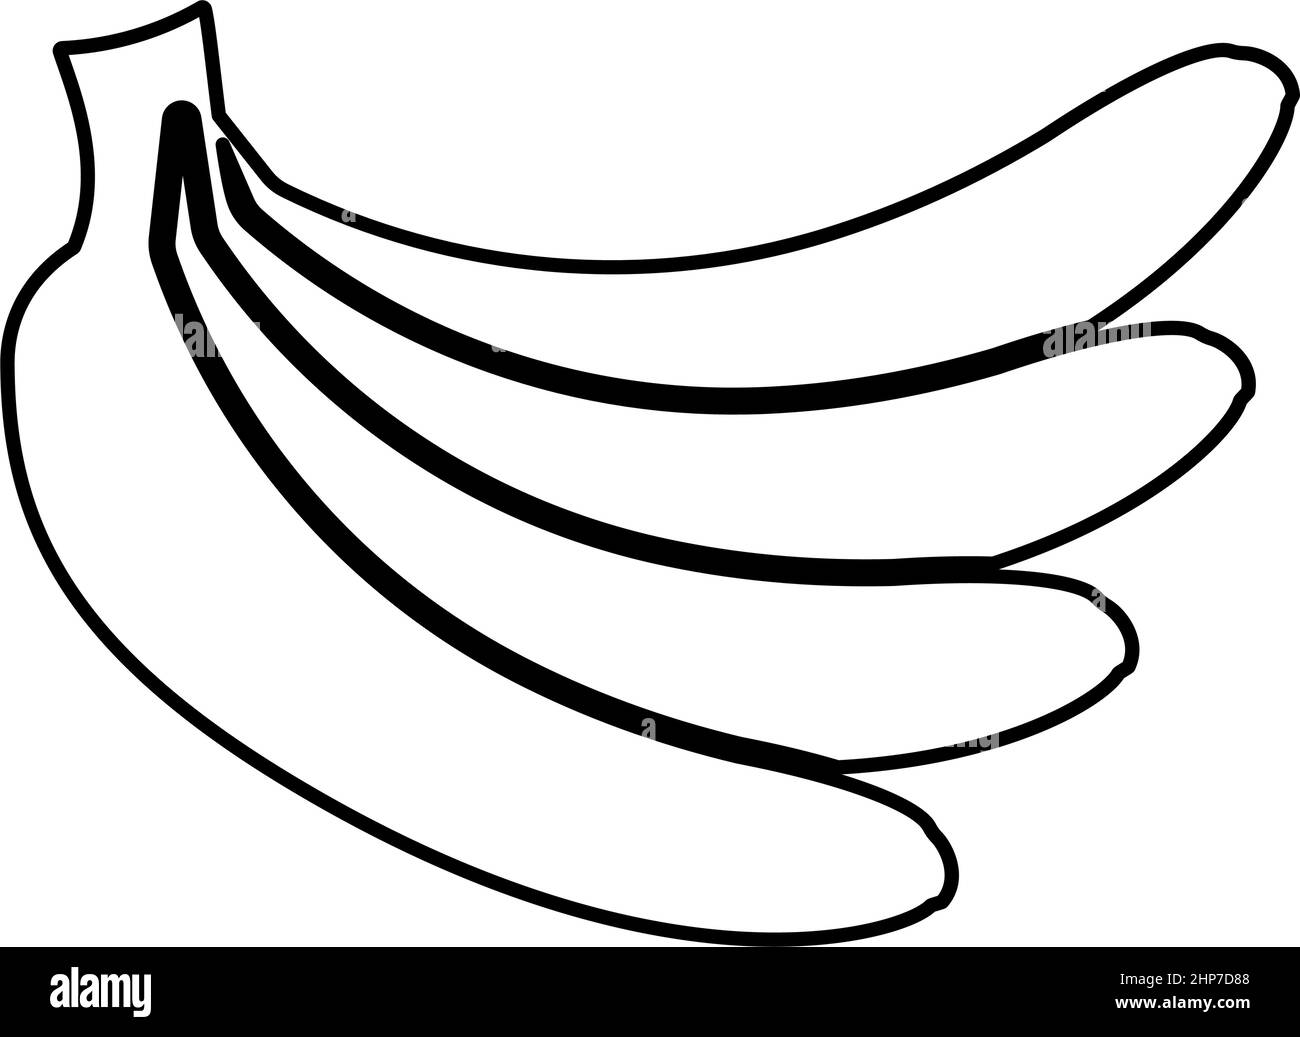 Bund von Bananen Kontur Umriss Symbol schwarze Farbe Vektor Illustration flachen Stil Bild Stock Vektor